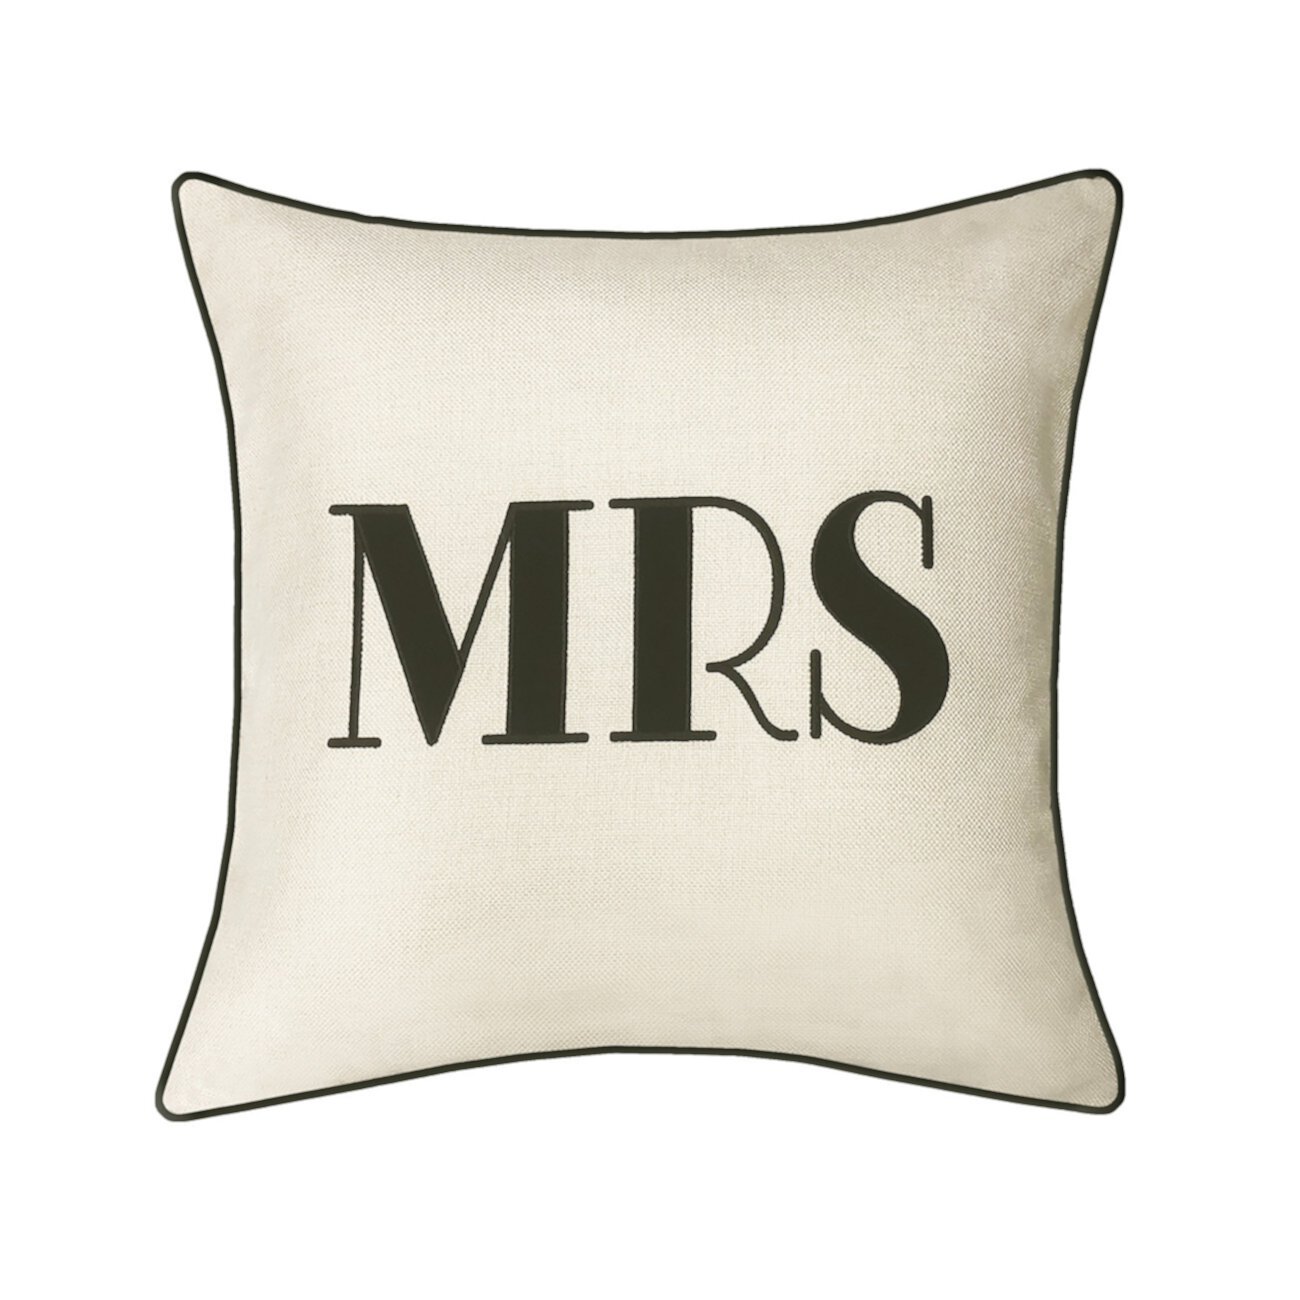 Праздничная подушка с вышивкой и аппликацией "Миссис" Edie@Home